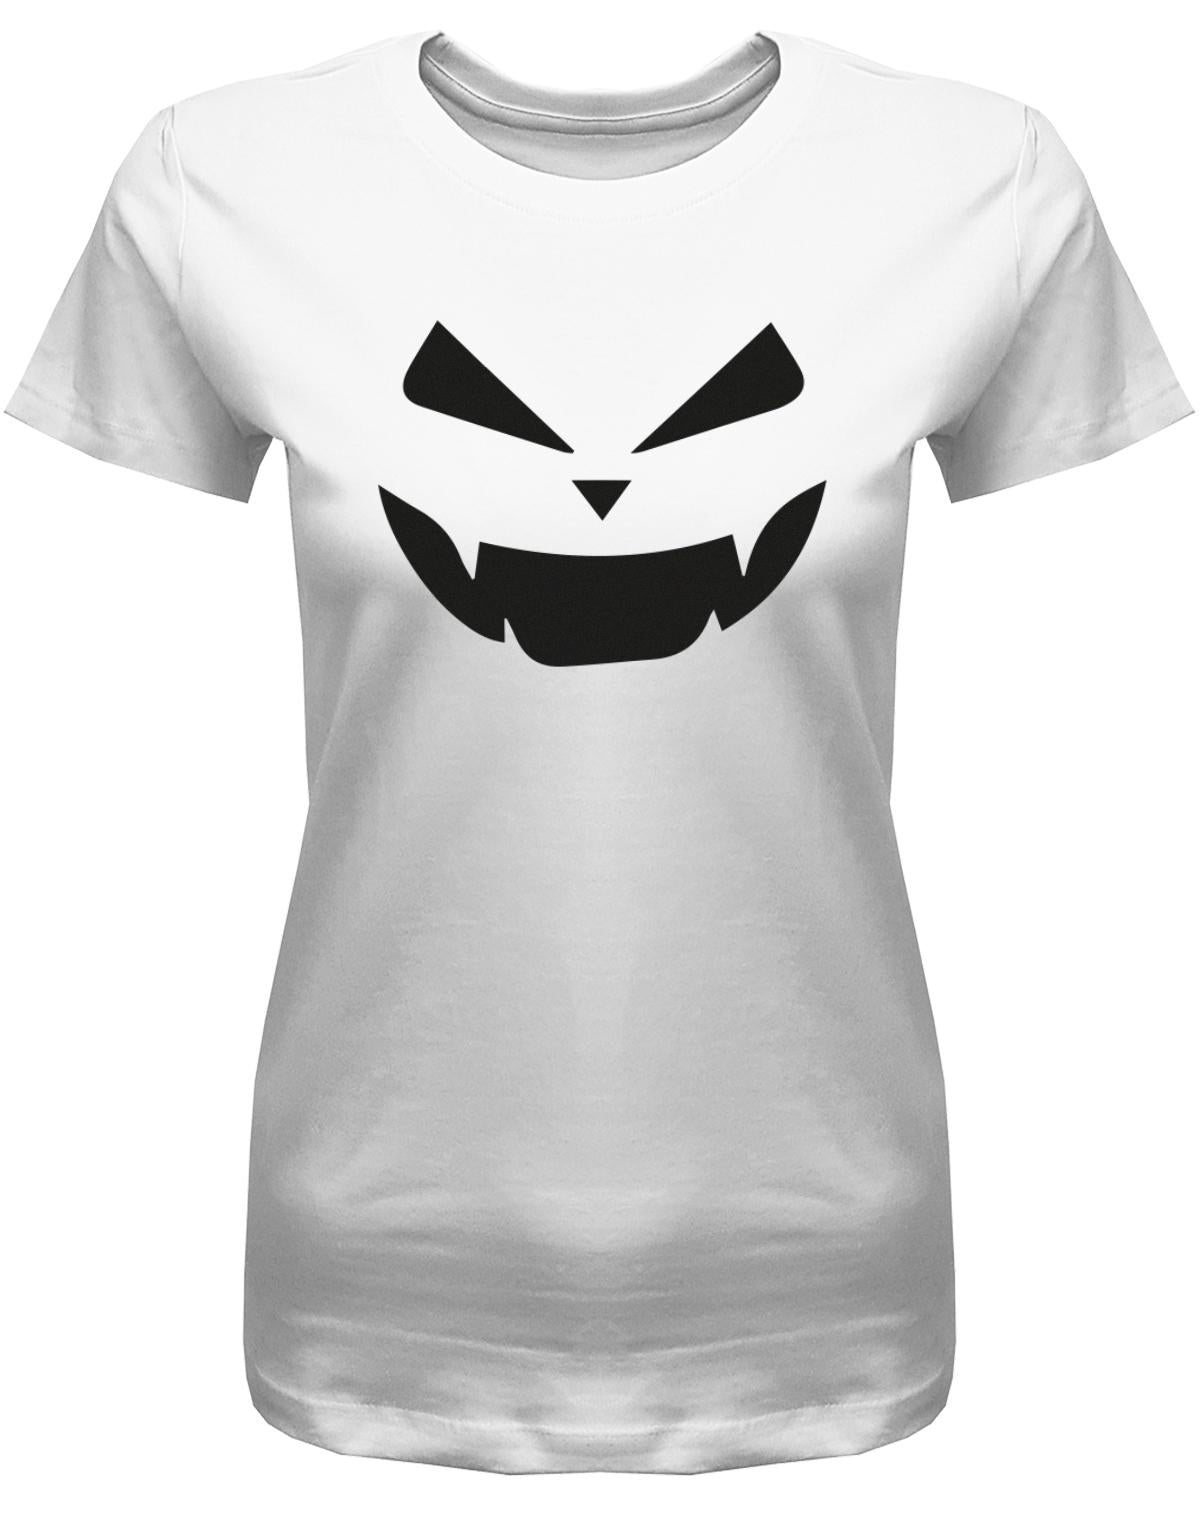 Bad-Ghost-Shirt-Geist-Halloween-Damen-Weiss